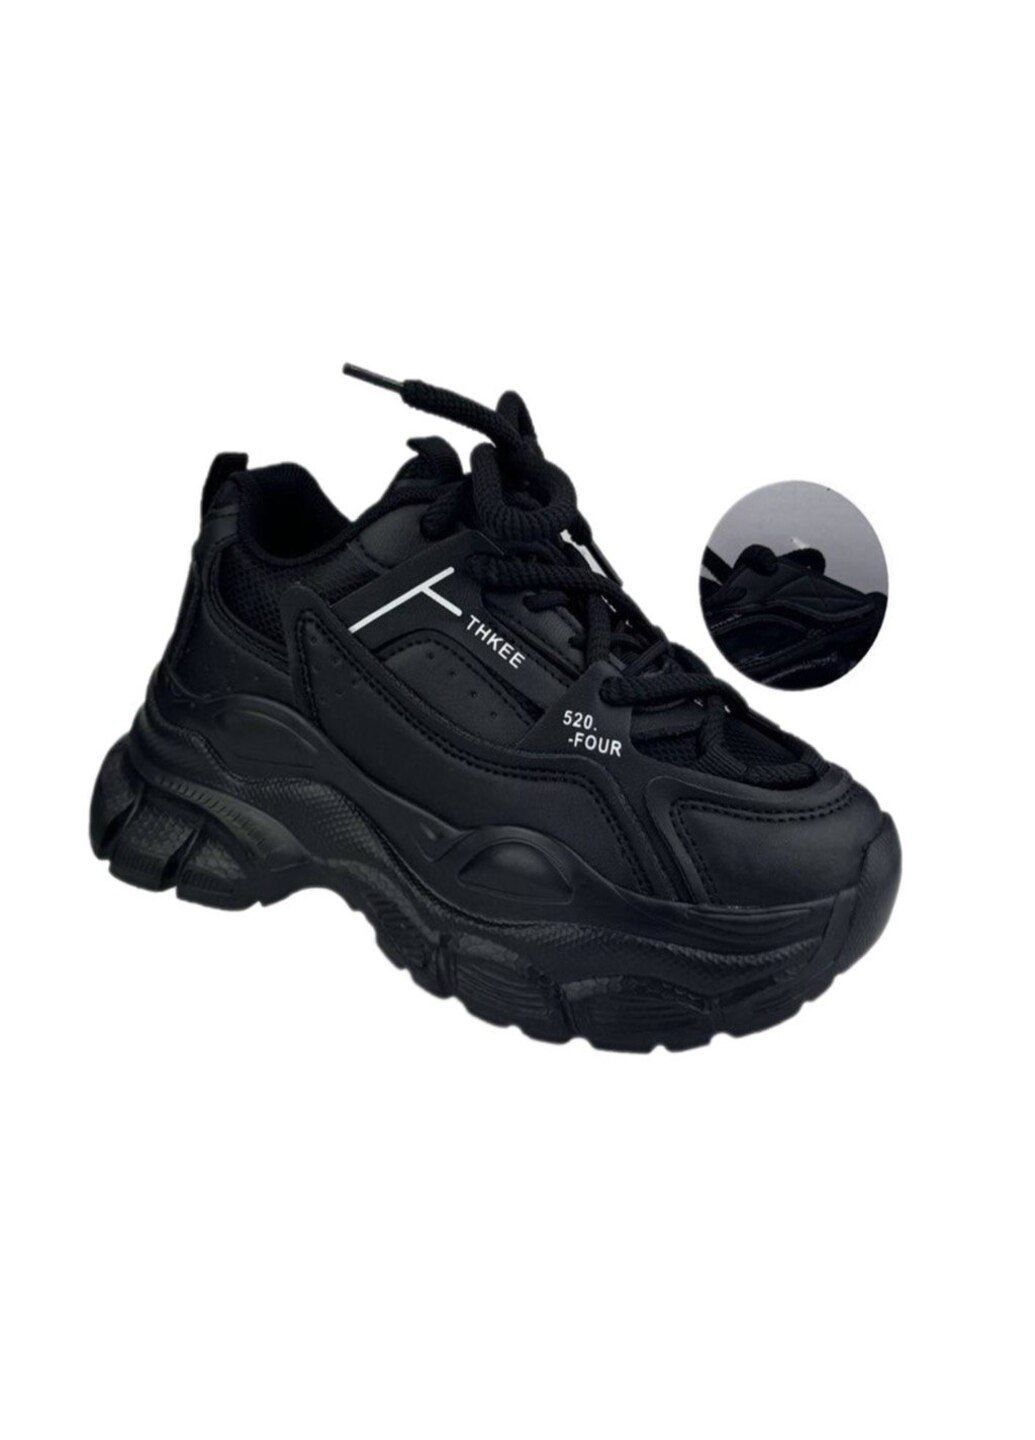 Черные демисезонные демисезонные кроссовки для девочки. Jong Golf